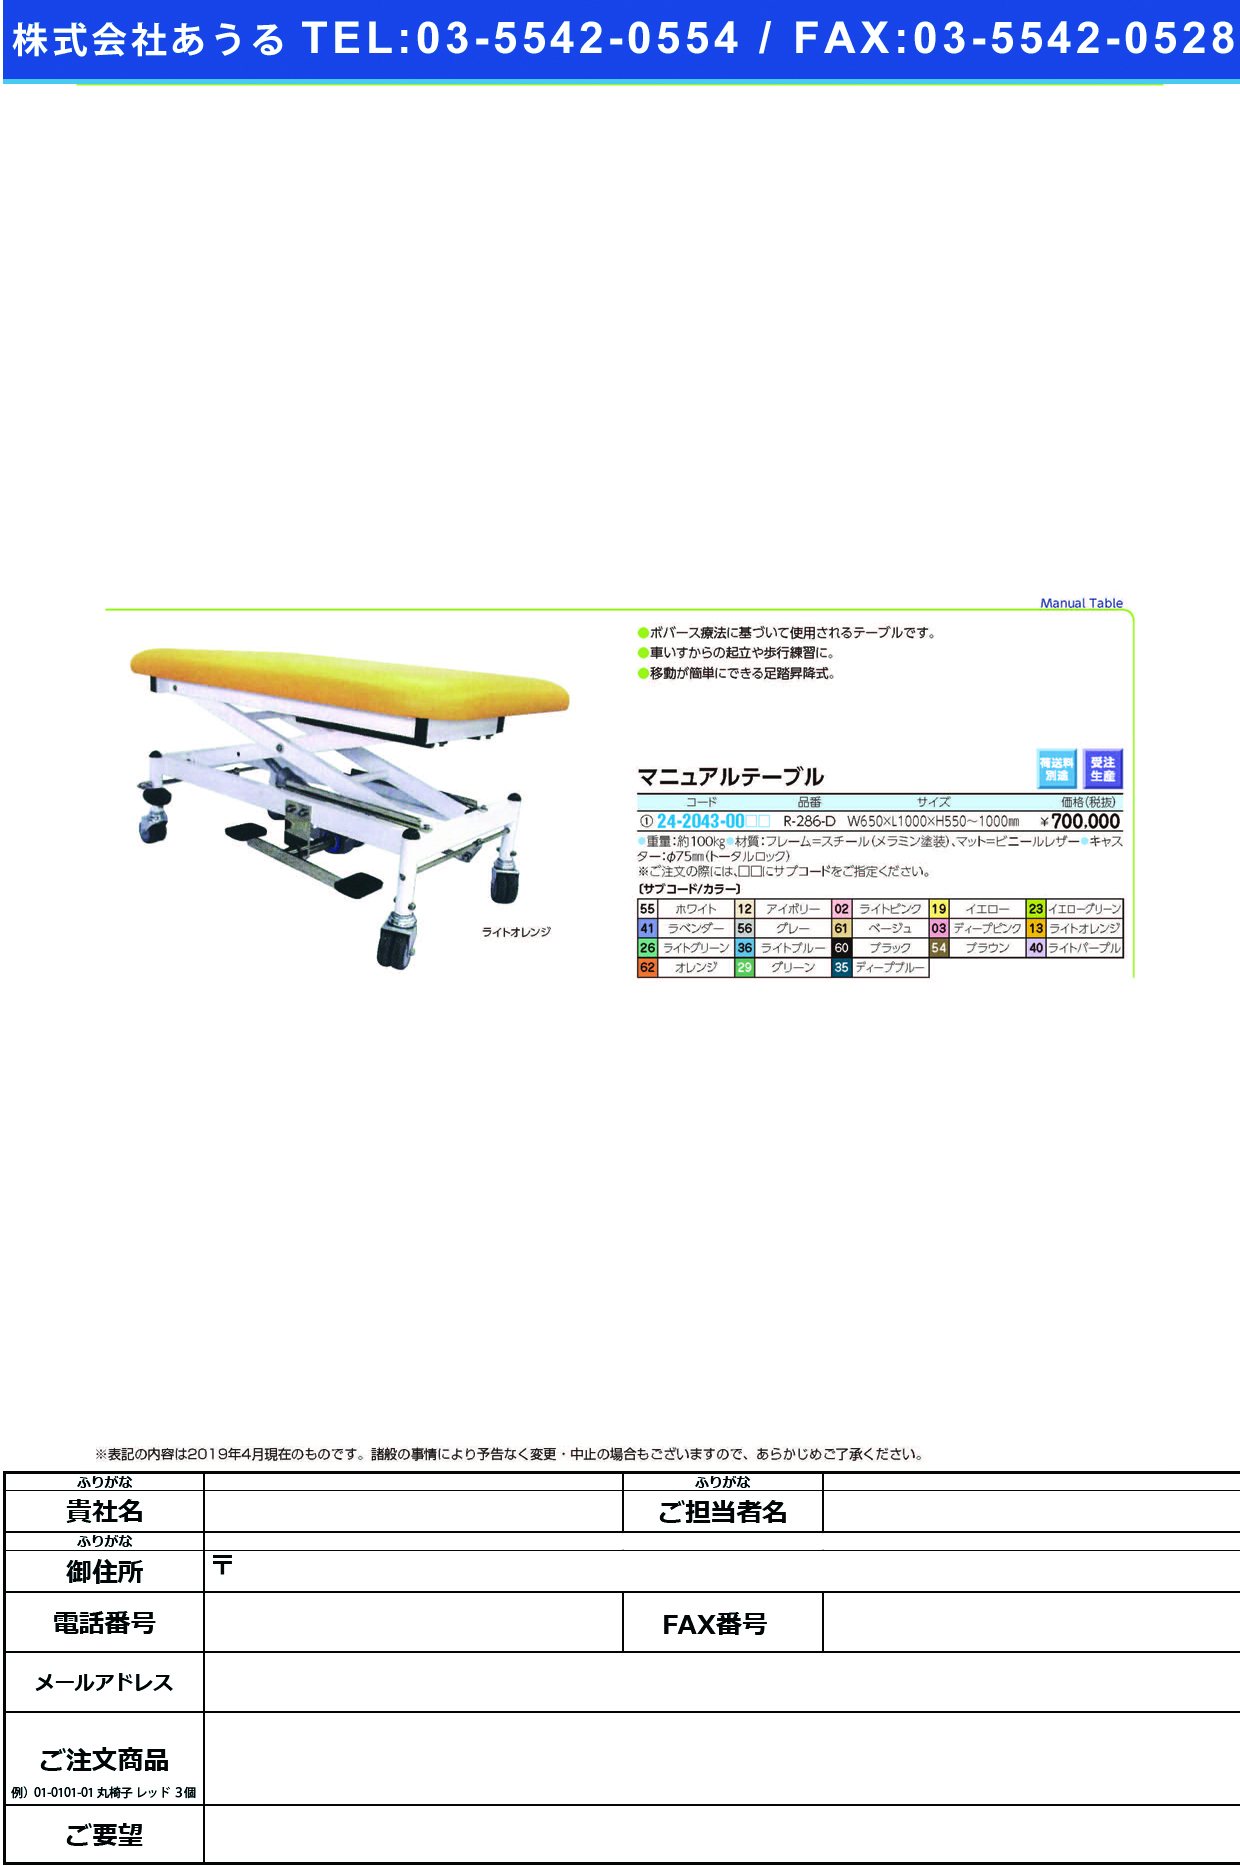 (24-2043-00)マニュアルテーブル R-286-D ﾏﾆｭｱﾙﾃｰﾌﾞﾙ ブラック【1台単位】【2019年カタログ商品】